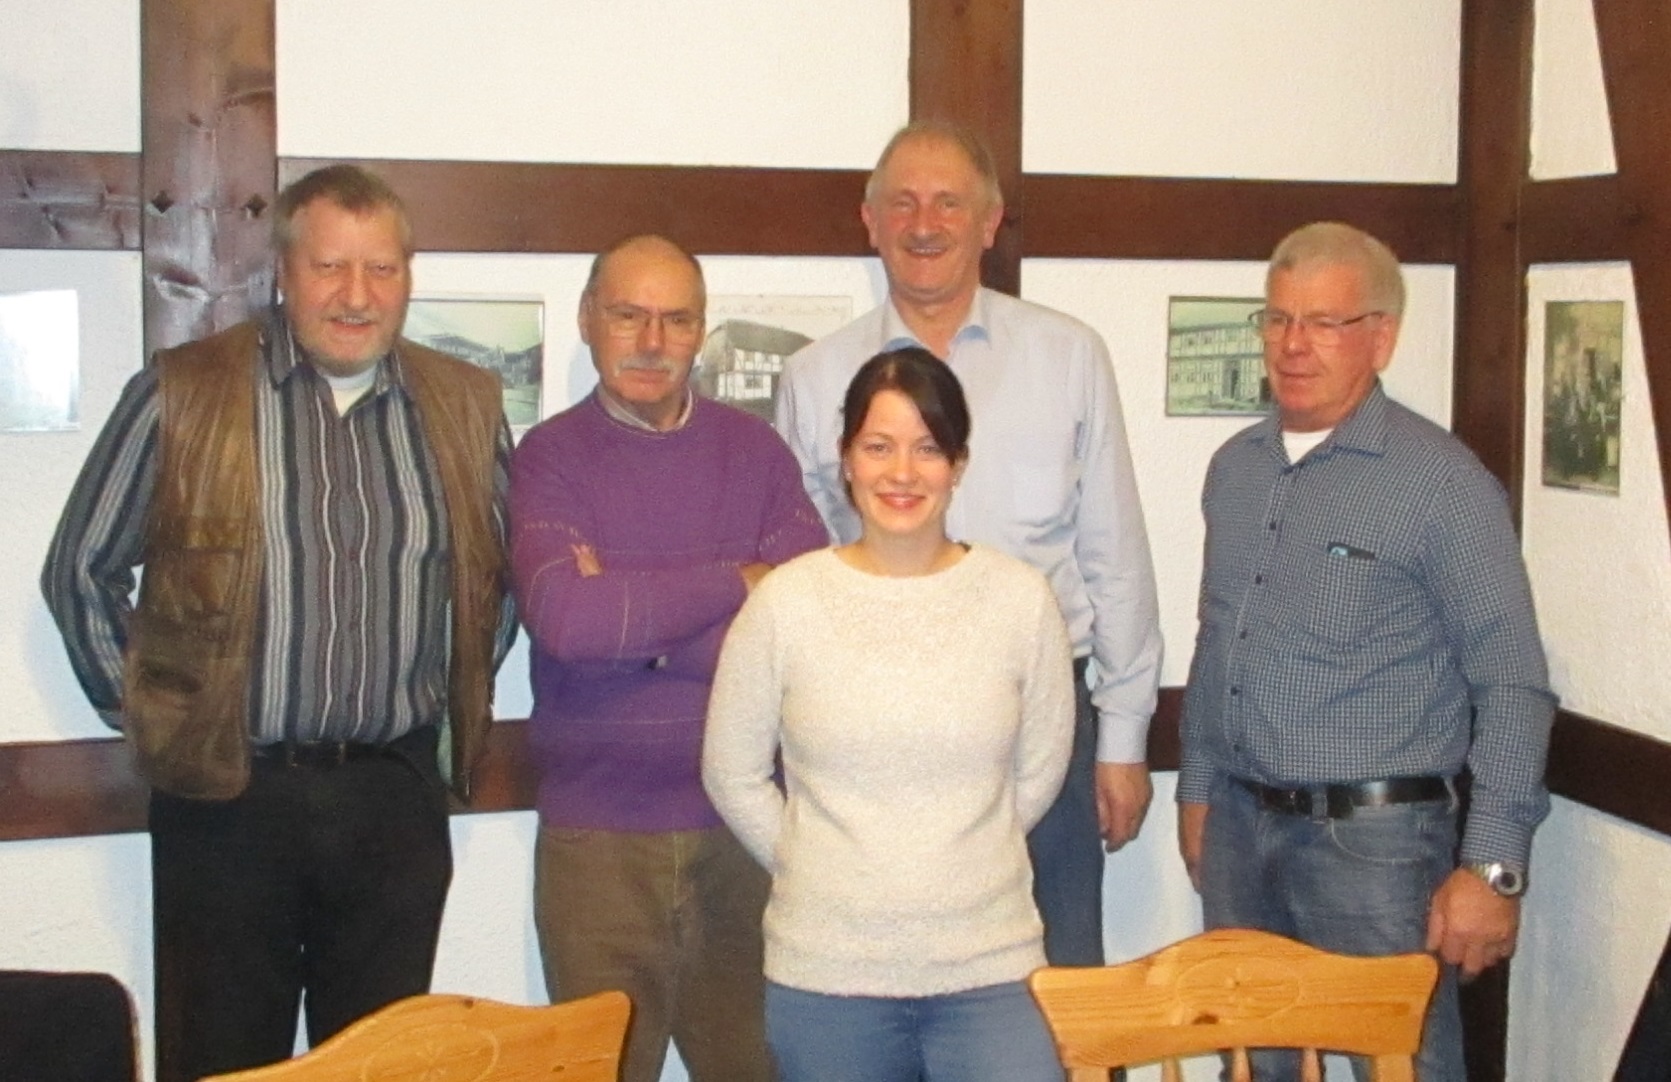 Von links nach rechts: Otto Heinemeyer, Klaus-Peter Platz, Joachim Stünkel, Manfred Rose und vorne Anna-Lena Lampe